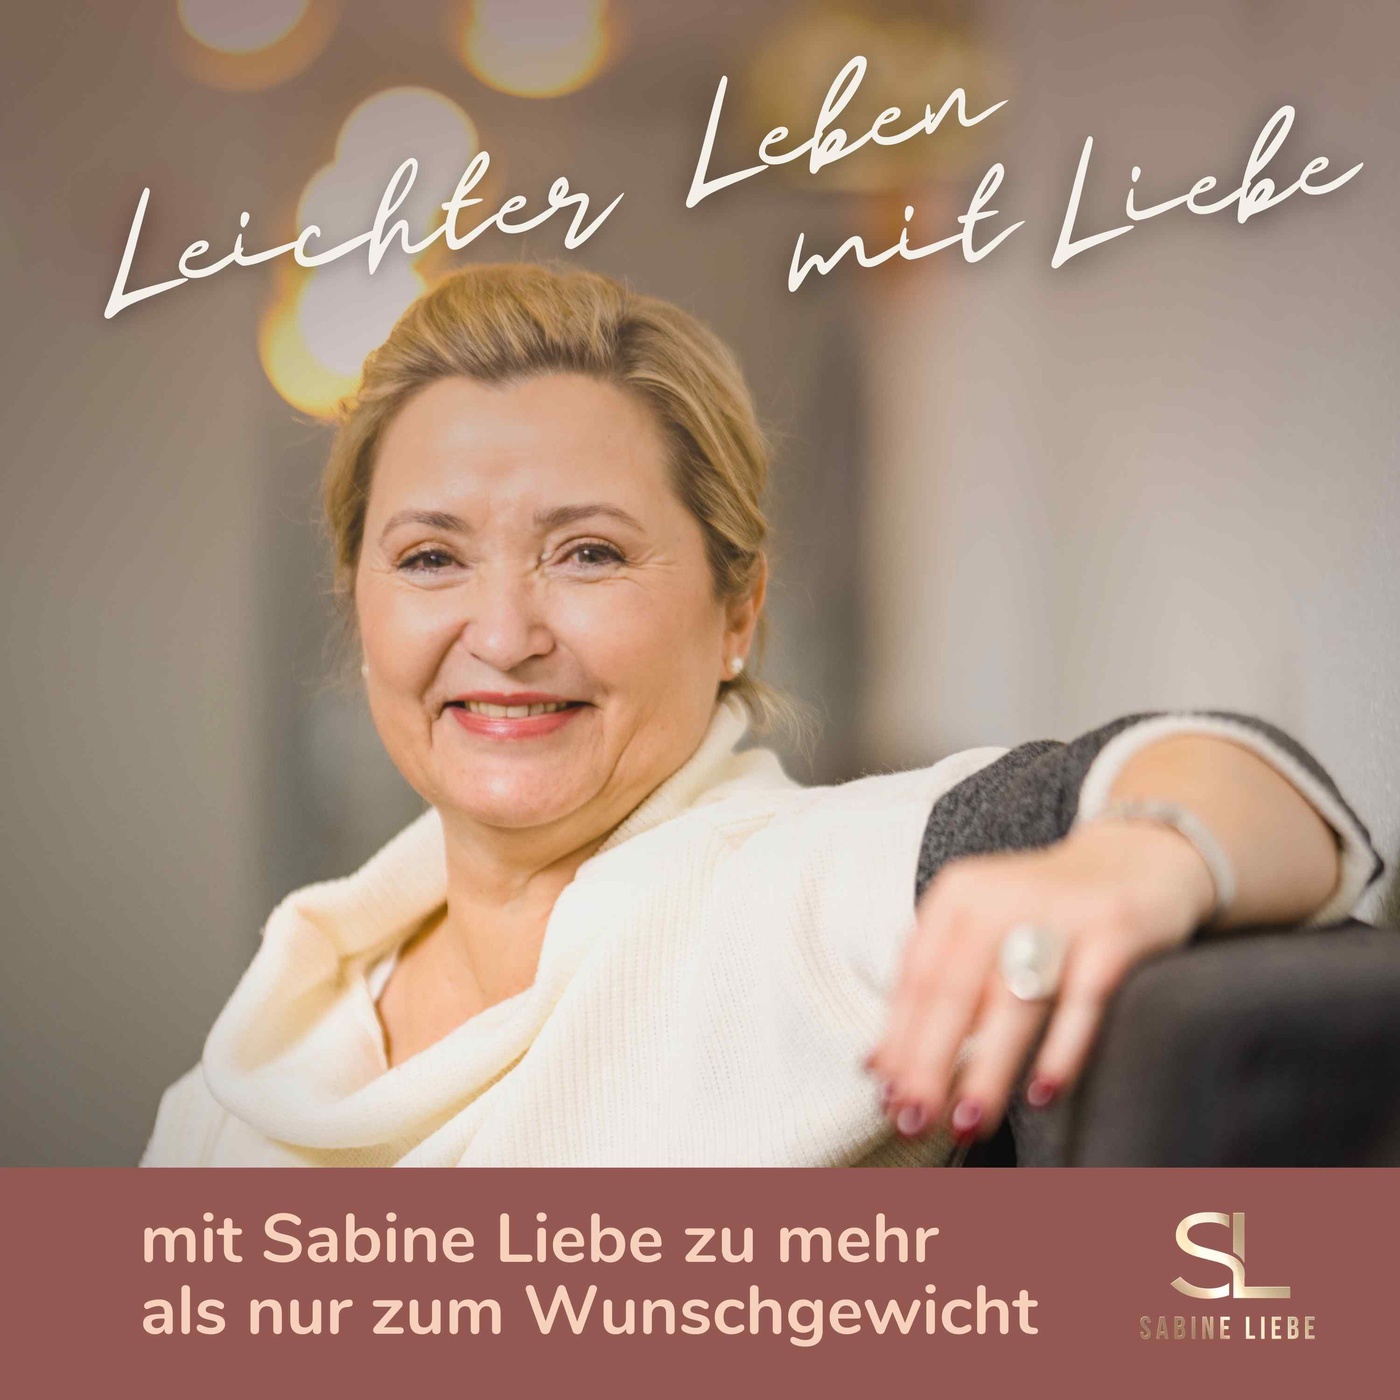 #1 LEICHTER LEBEN MIT LIEBE - Mit Sabine Liebe mehr als nur zum Wunschgewicht